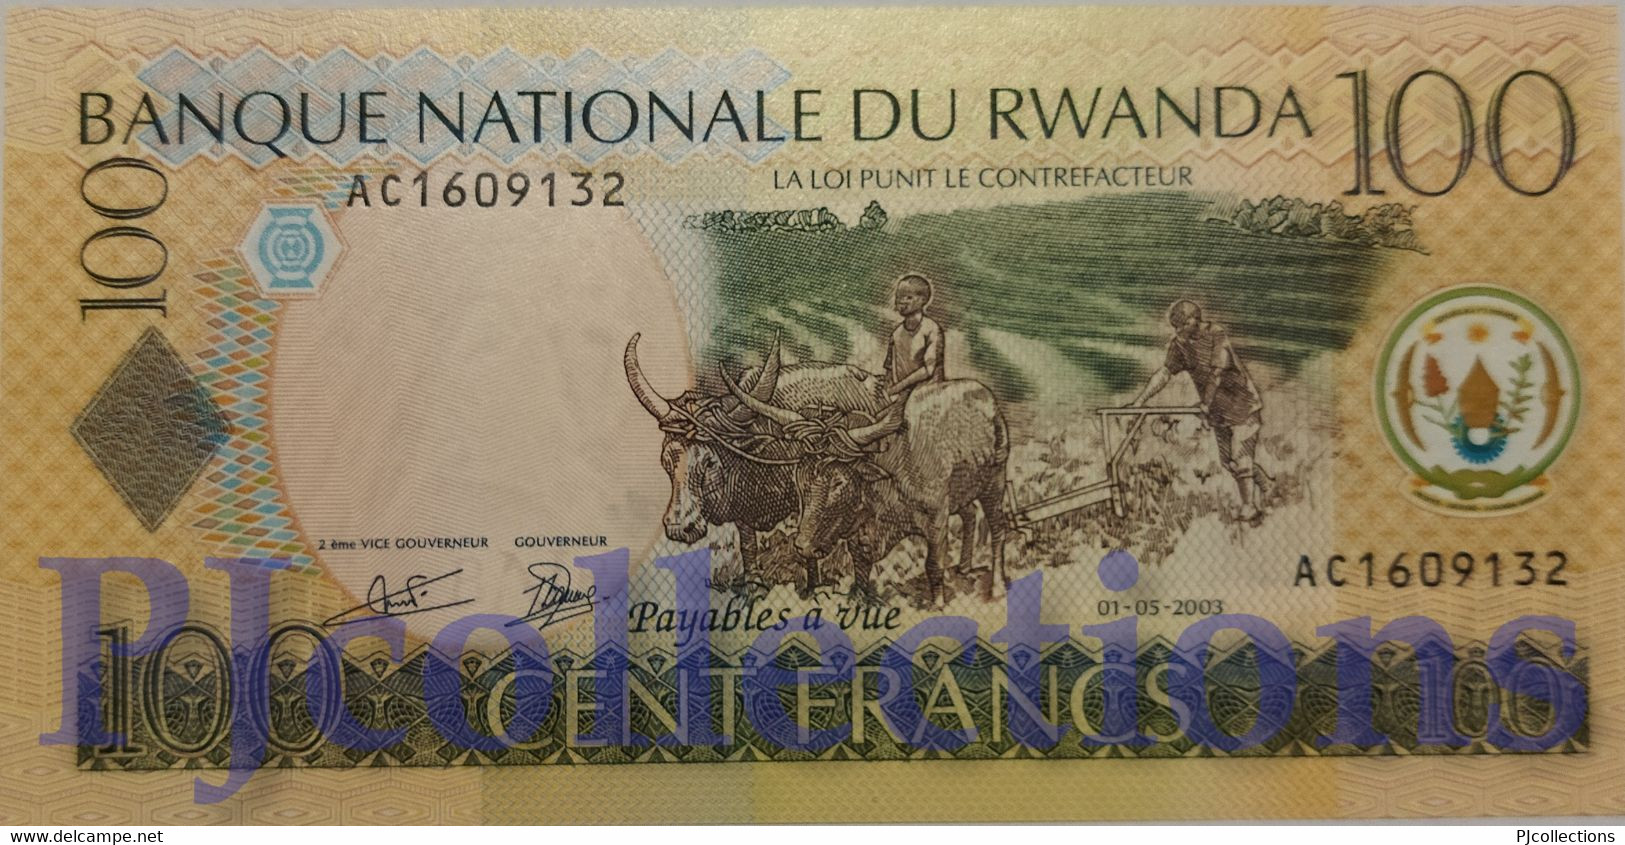 RWANDA 100 FRANCS 2003 PICK 29a UNC PREFIX "AA" - Ruanda